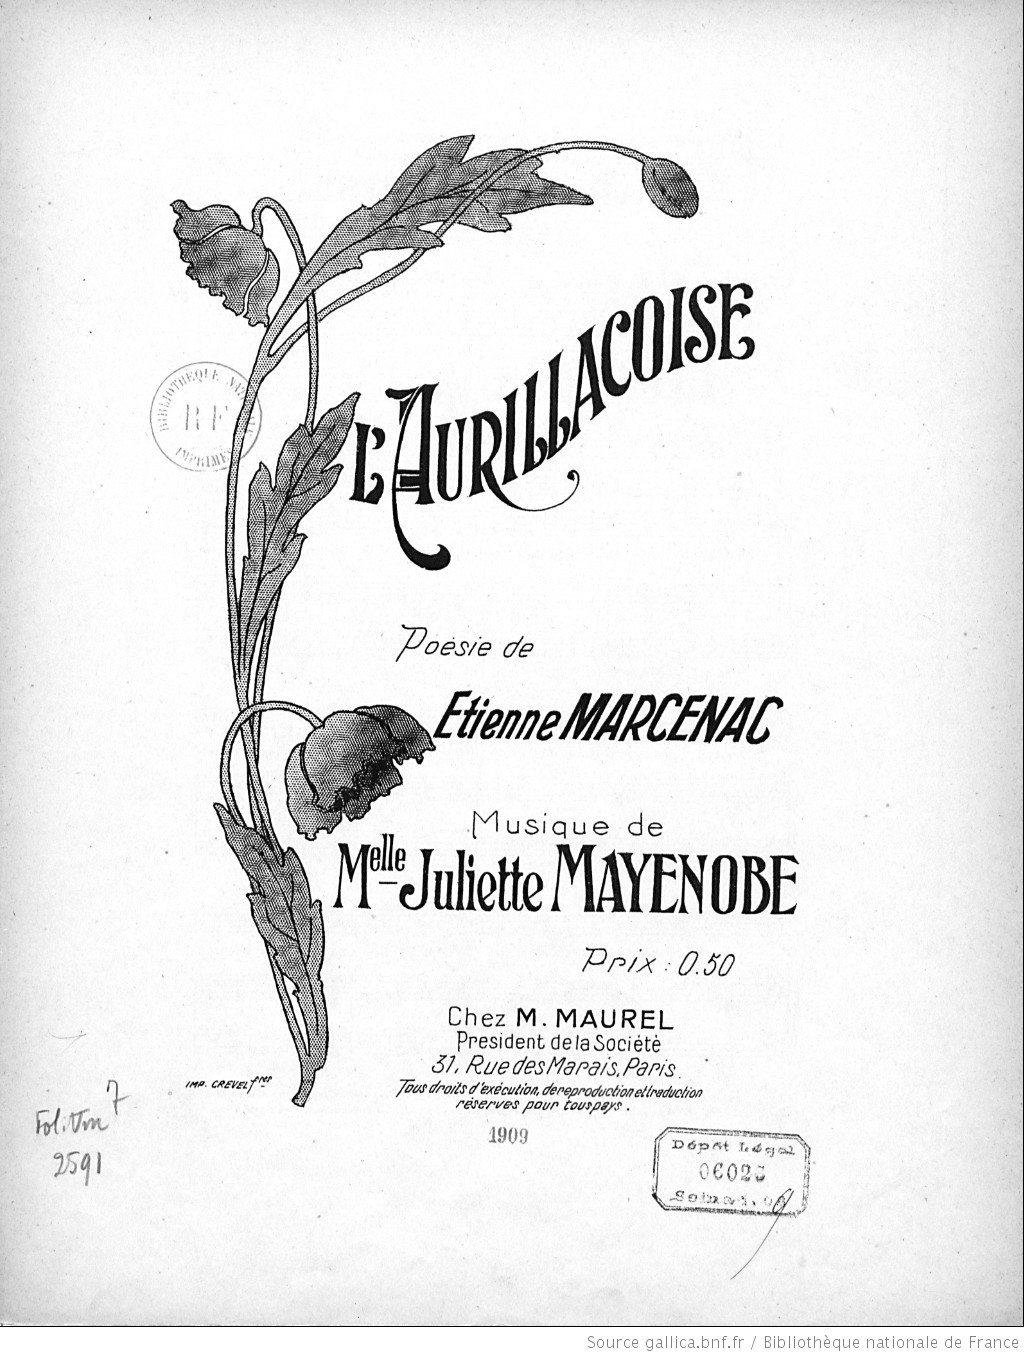 Aurillacoise Poesie de Etienne Marcenac